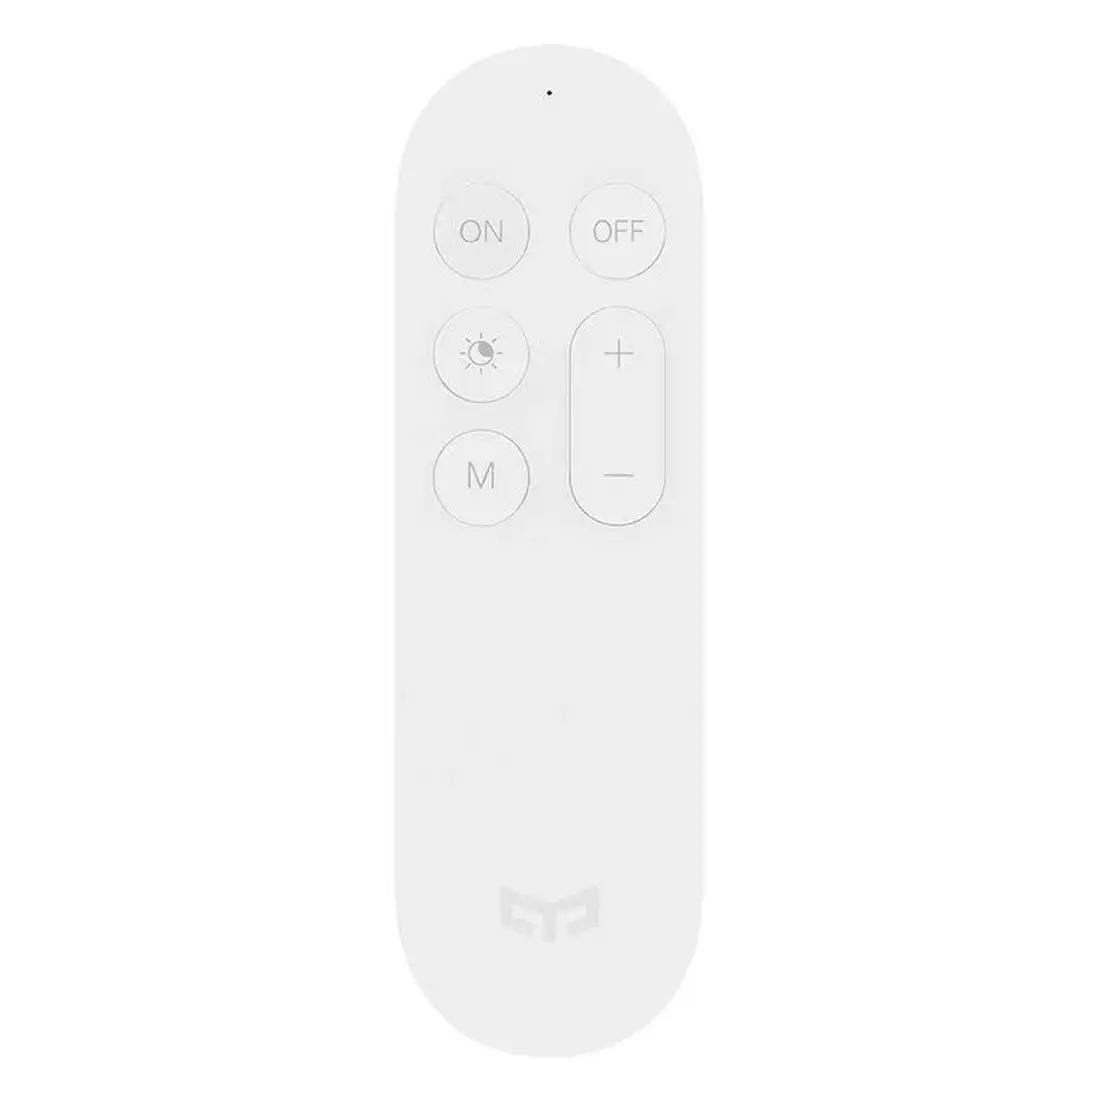 Xiaomi Yeelight Bluetooth Remote Control - White